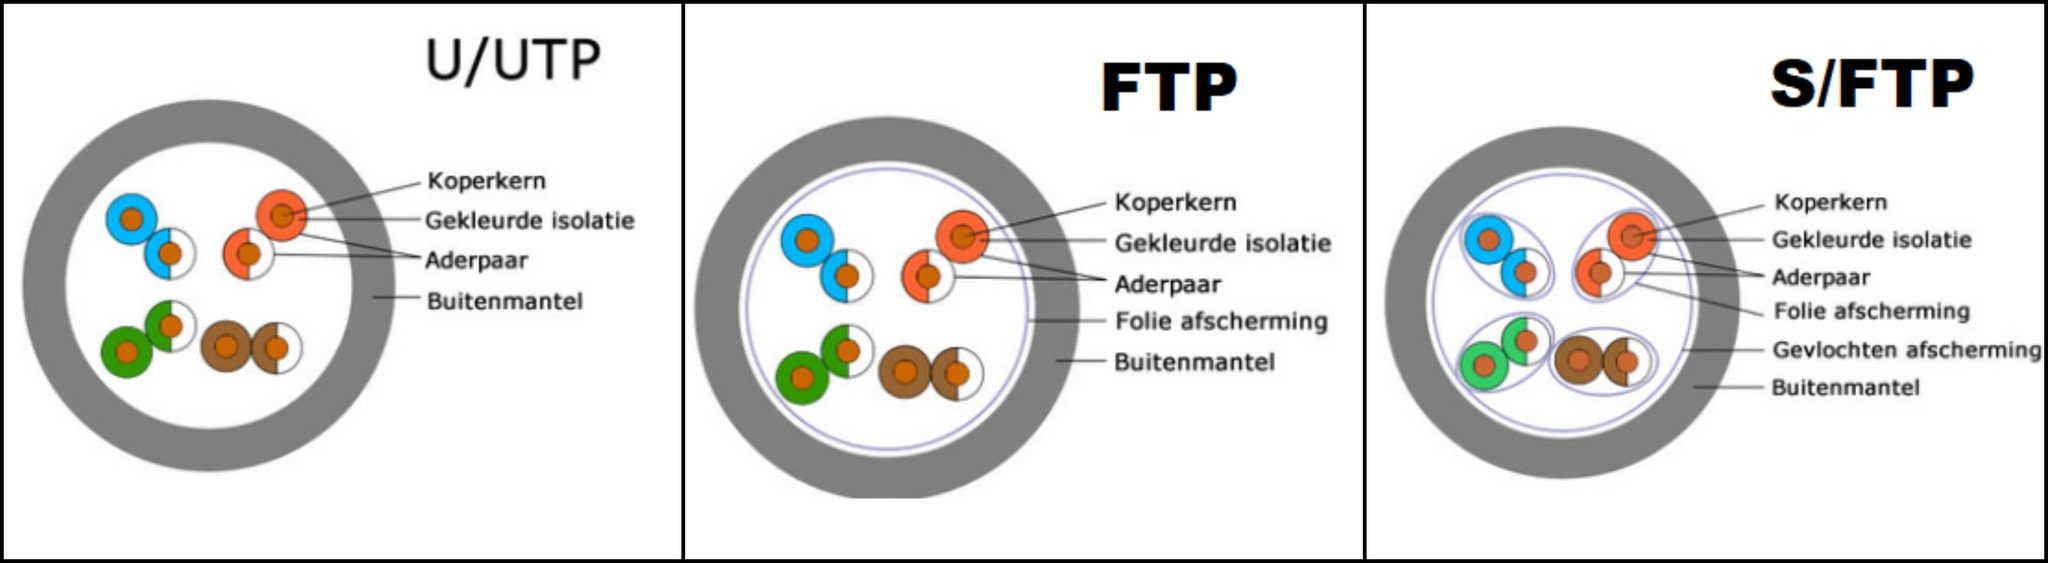 UTP vs FTP: wat zijn de verschillen?